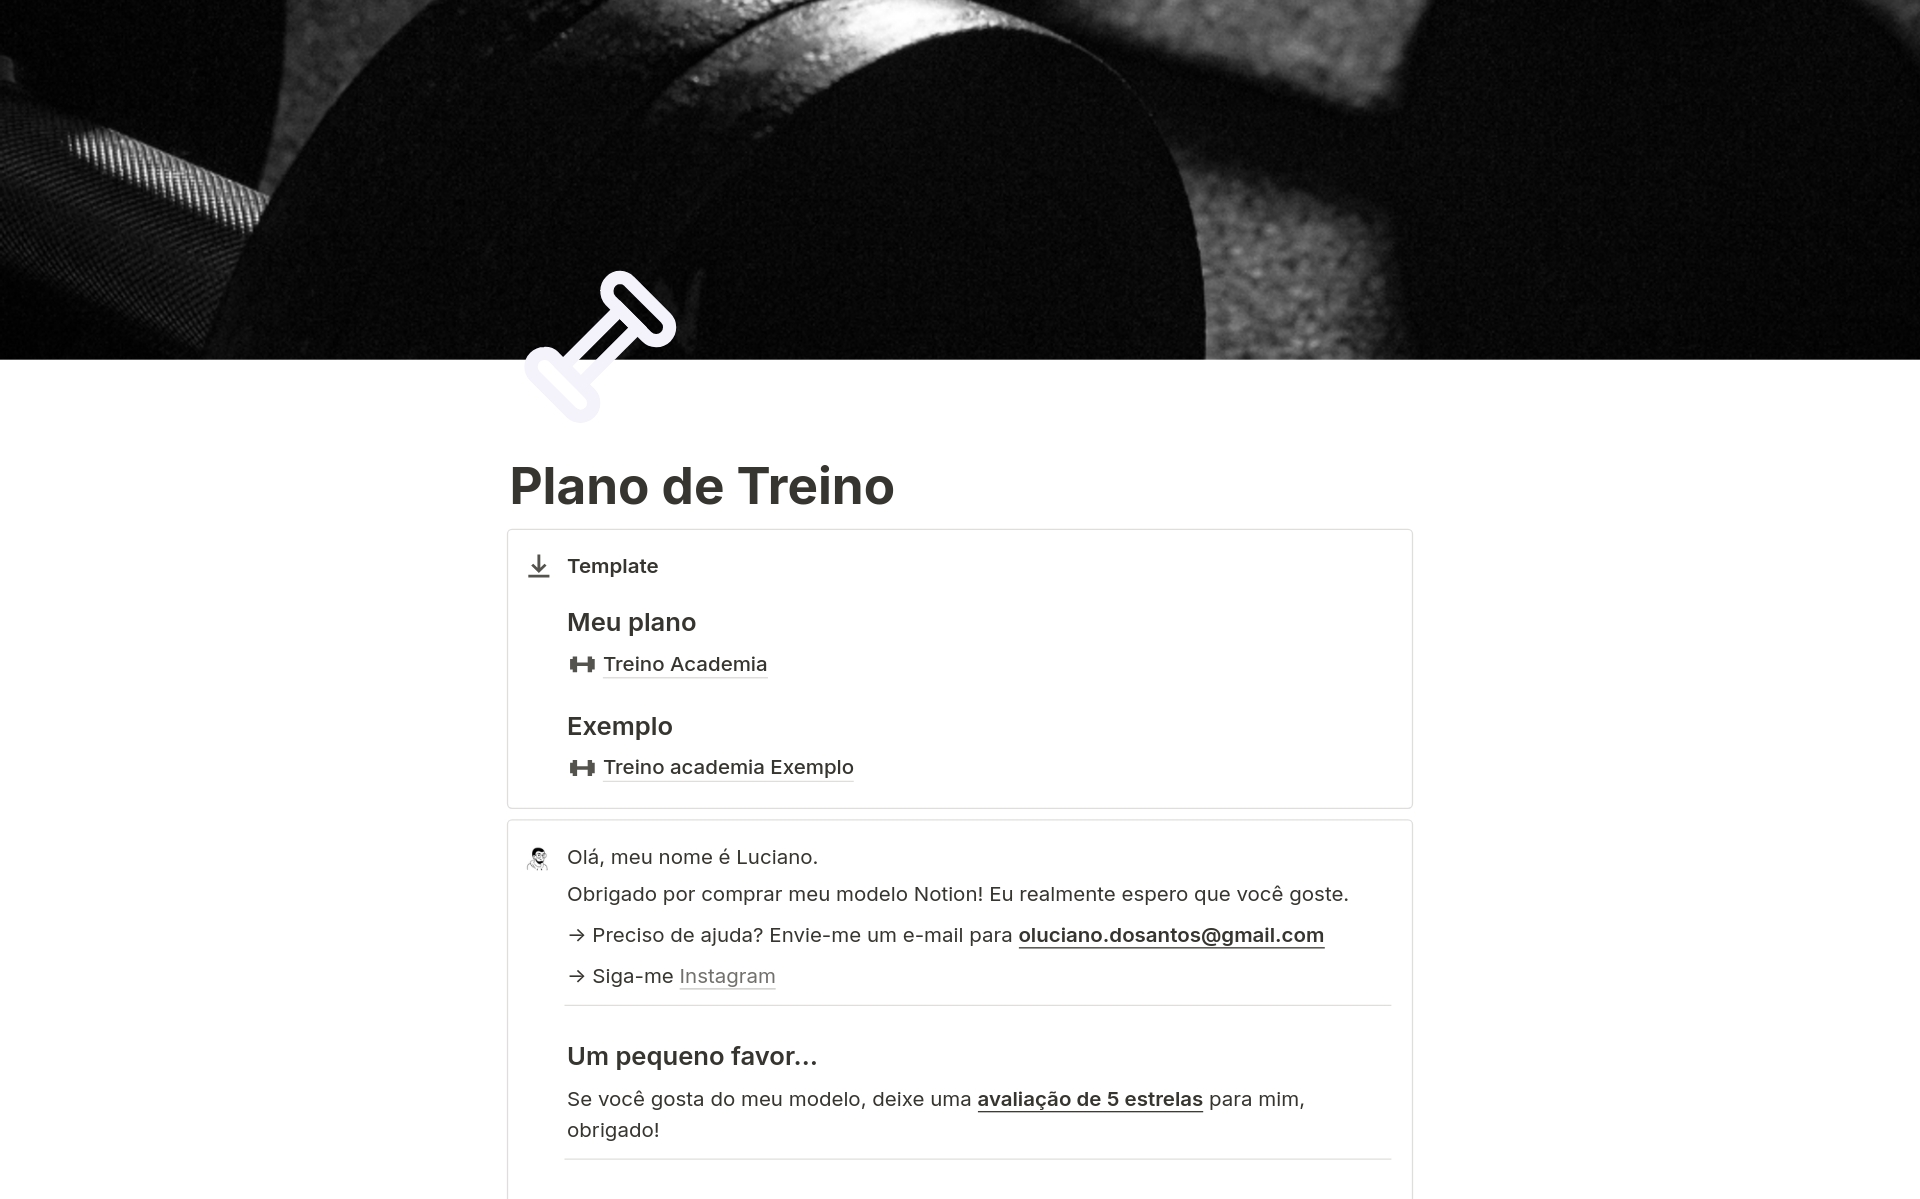 A template preview for Plano de Treino